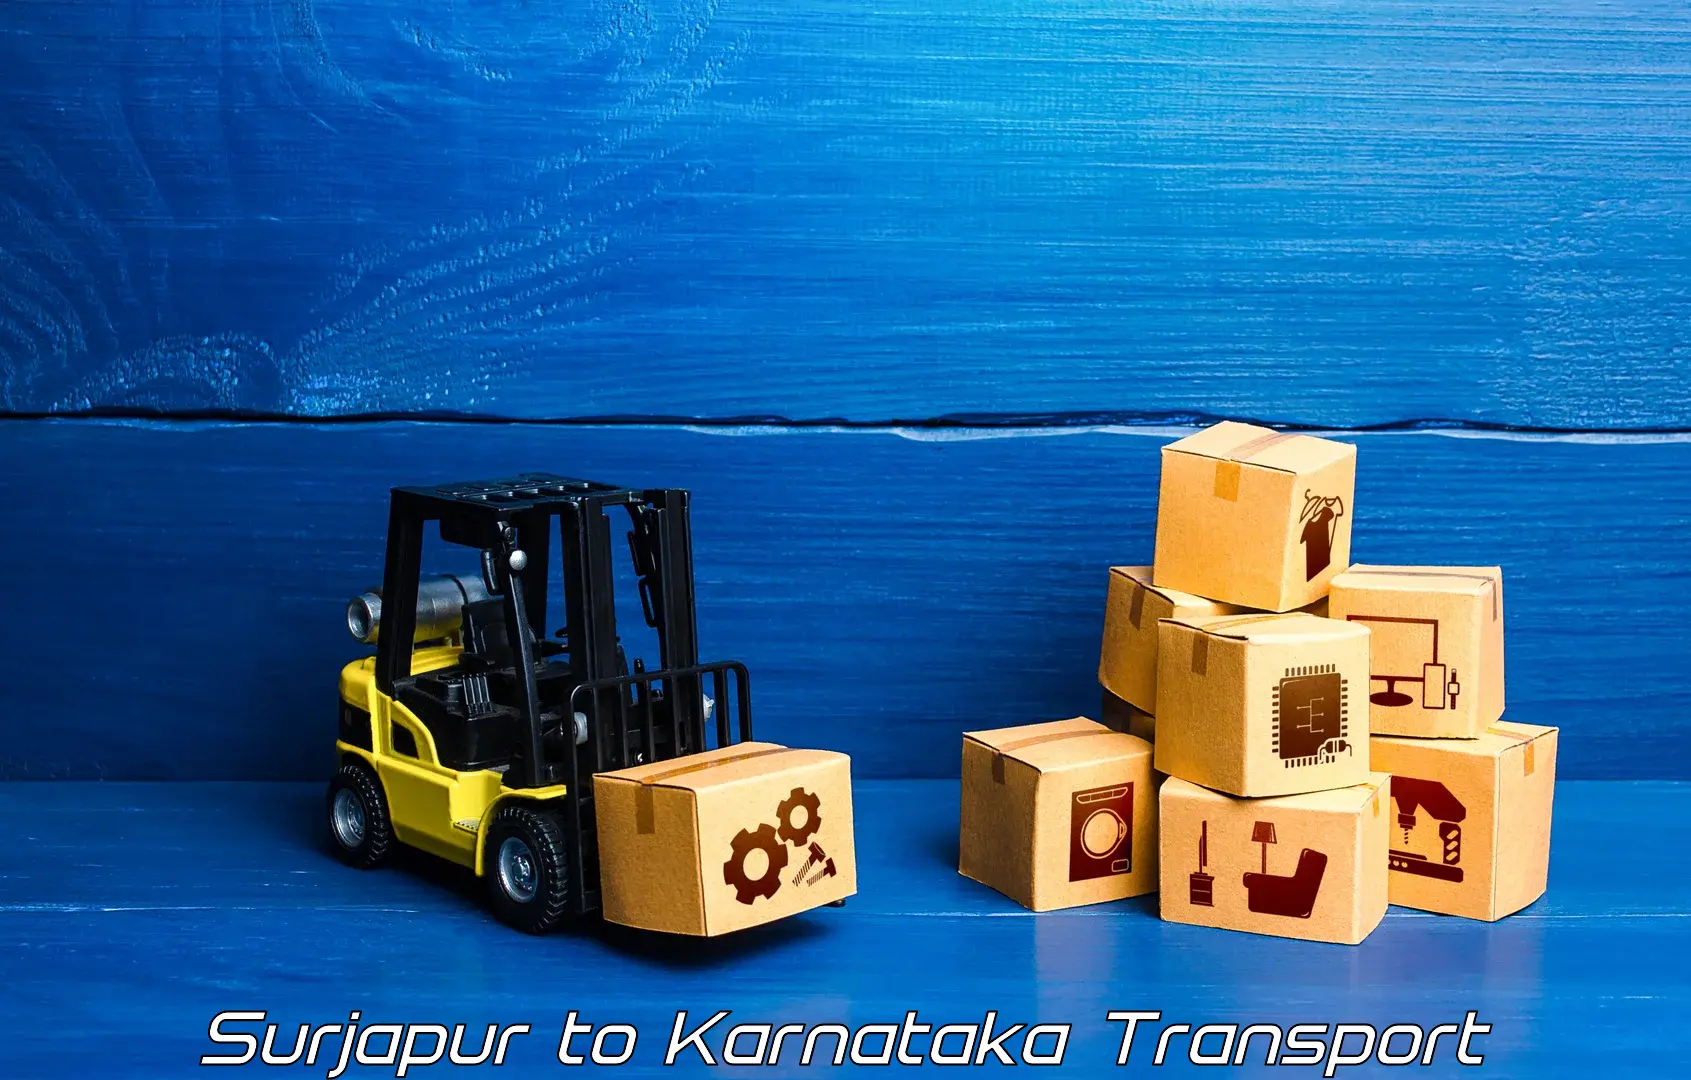 Interstate transport services Surjapur to Madhugiri